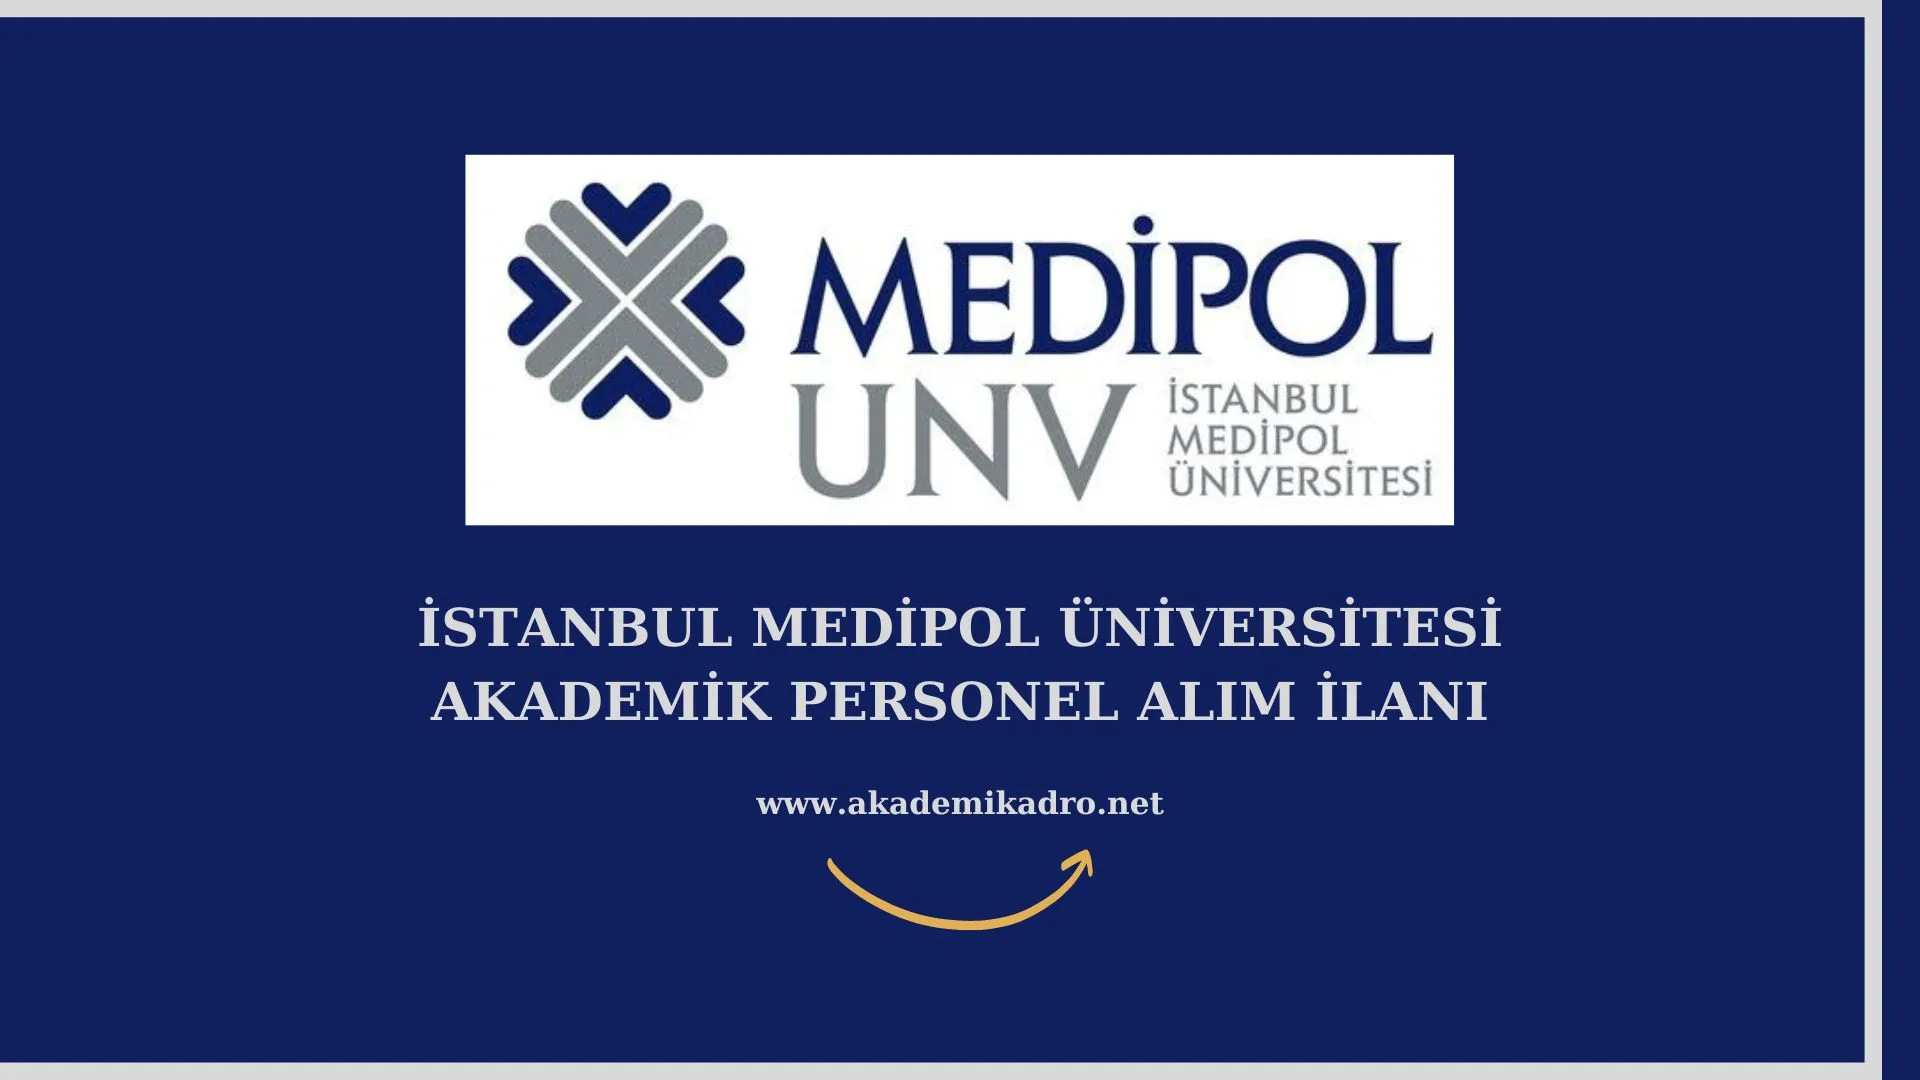 İstanbul Medipol Üniversitesi çeşitli branşlarda 36 akademik personel alacak. Son başvuru tarihi 31 Ağustos 2022.